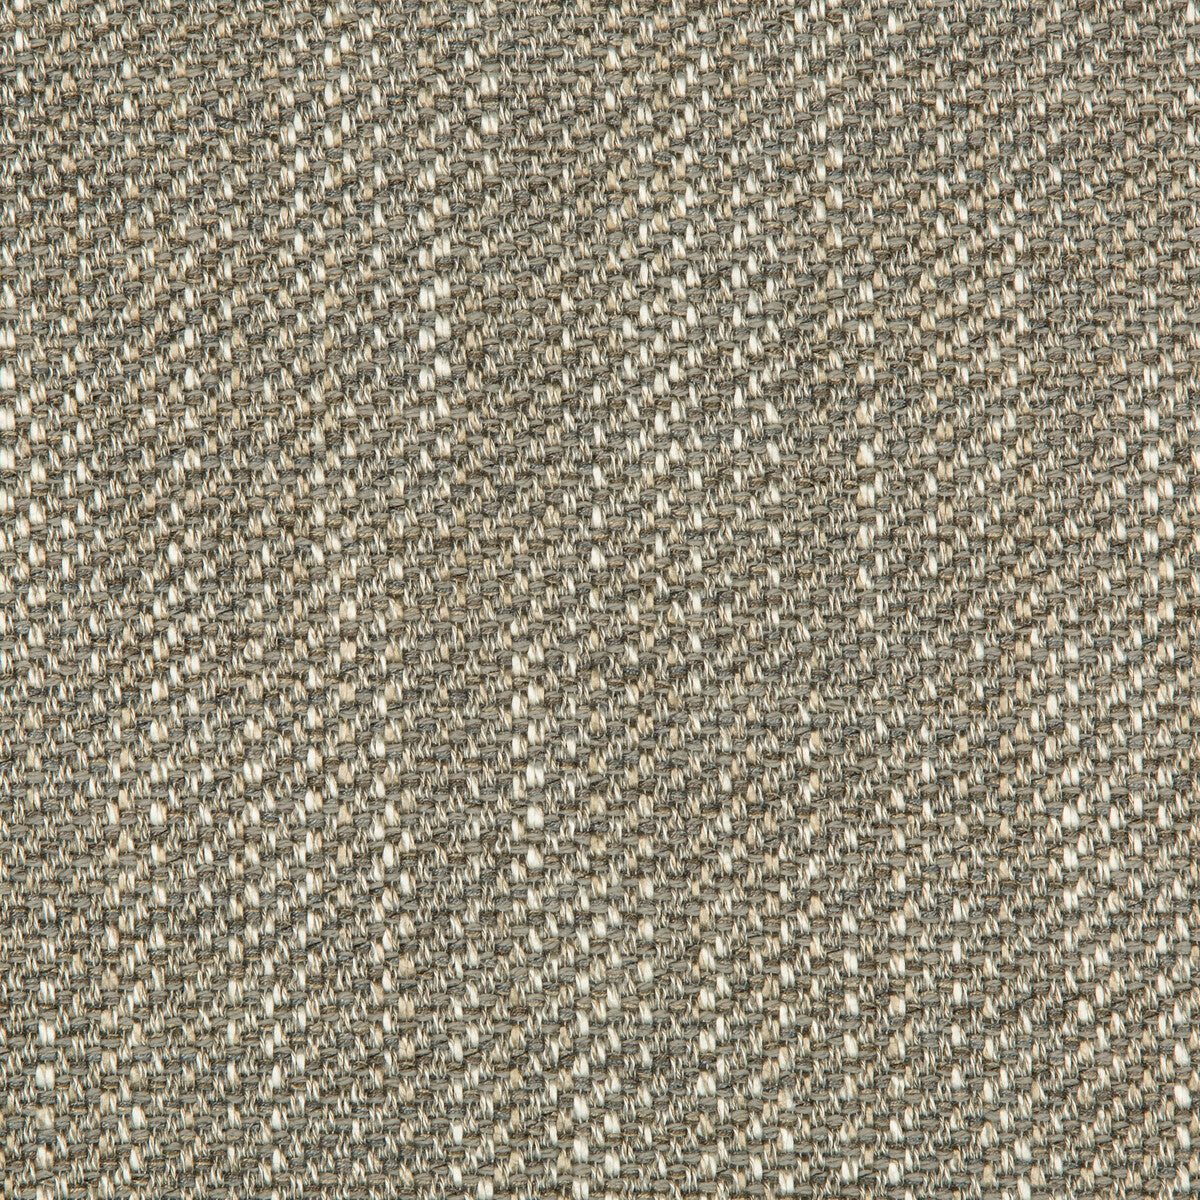 Kravet Design fabric in 35640-11 color - pattern 35640.11.0 - by Kravet Design